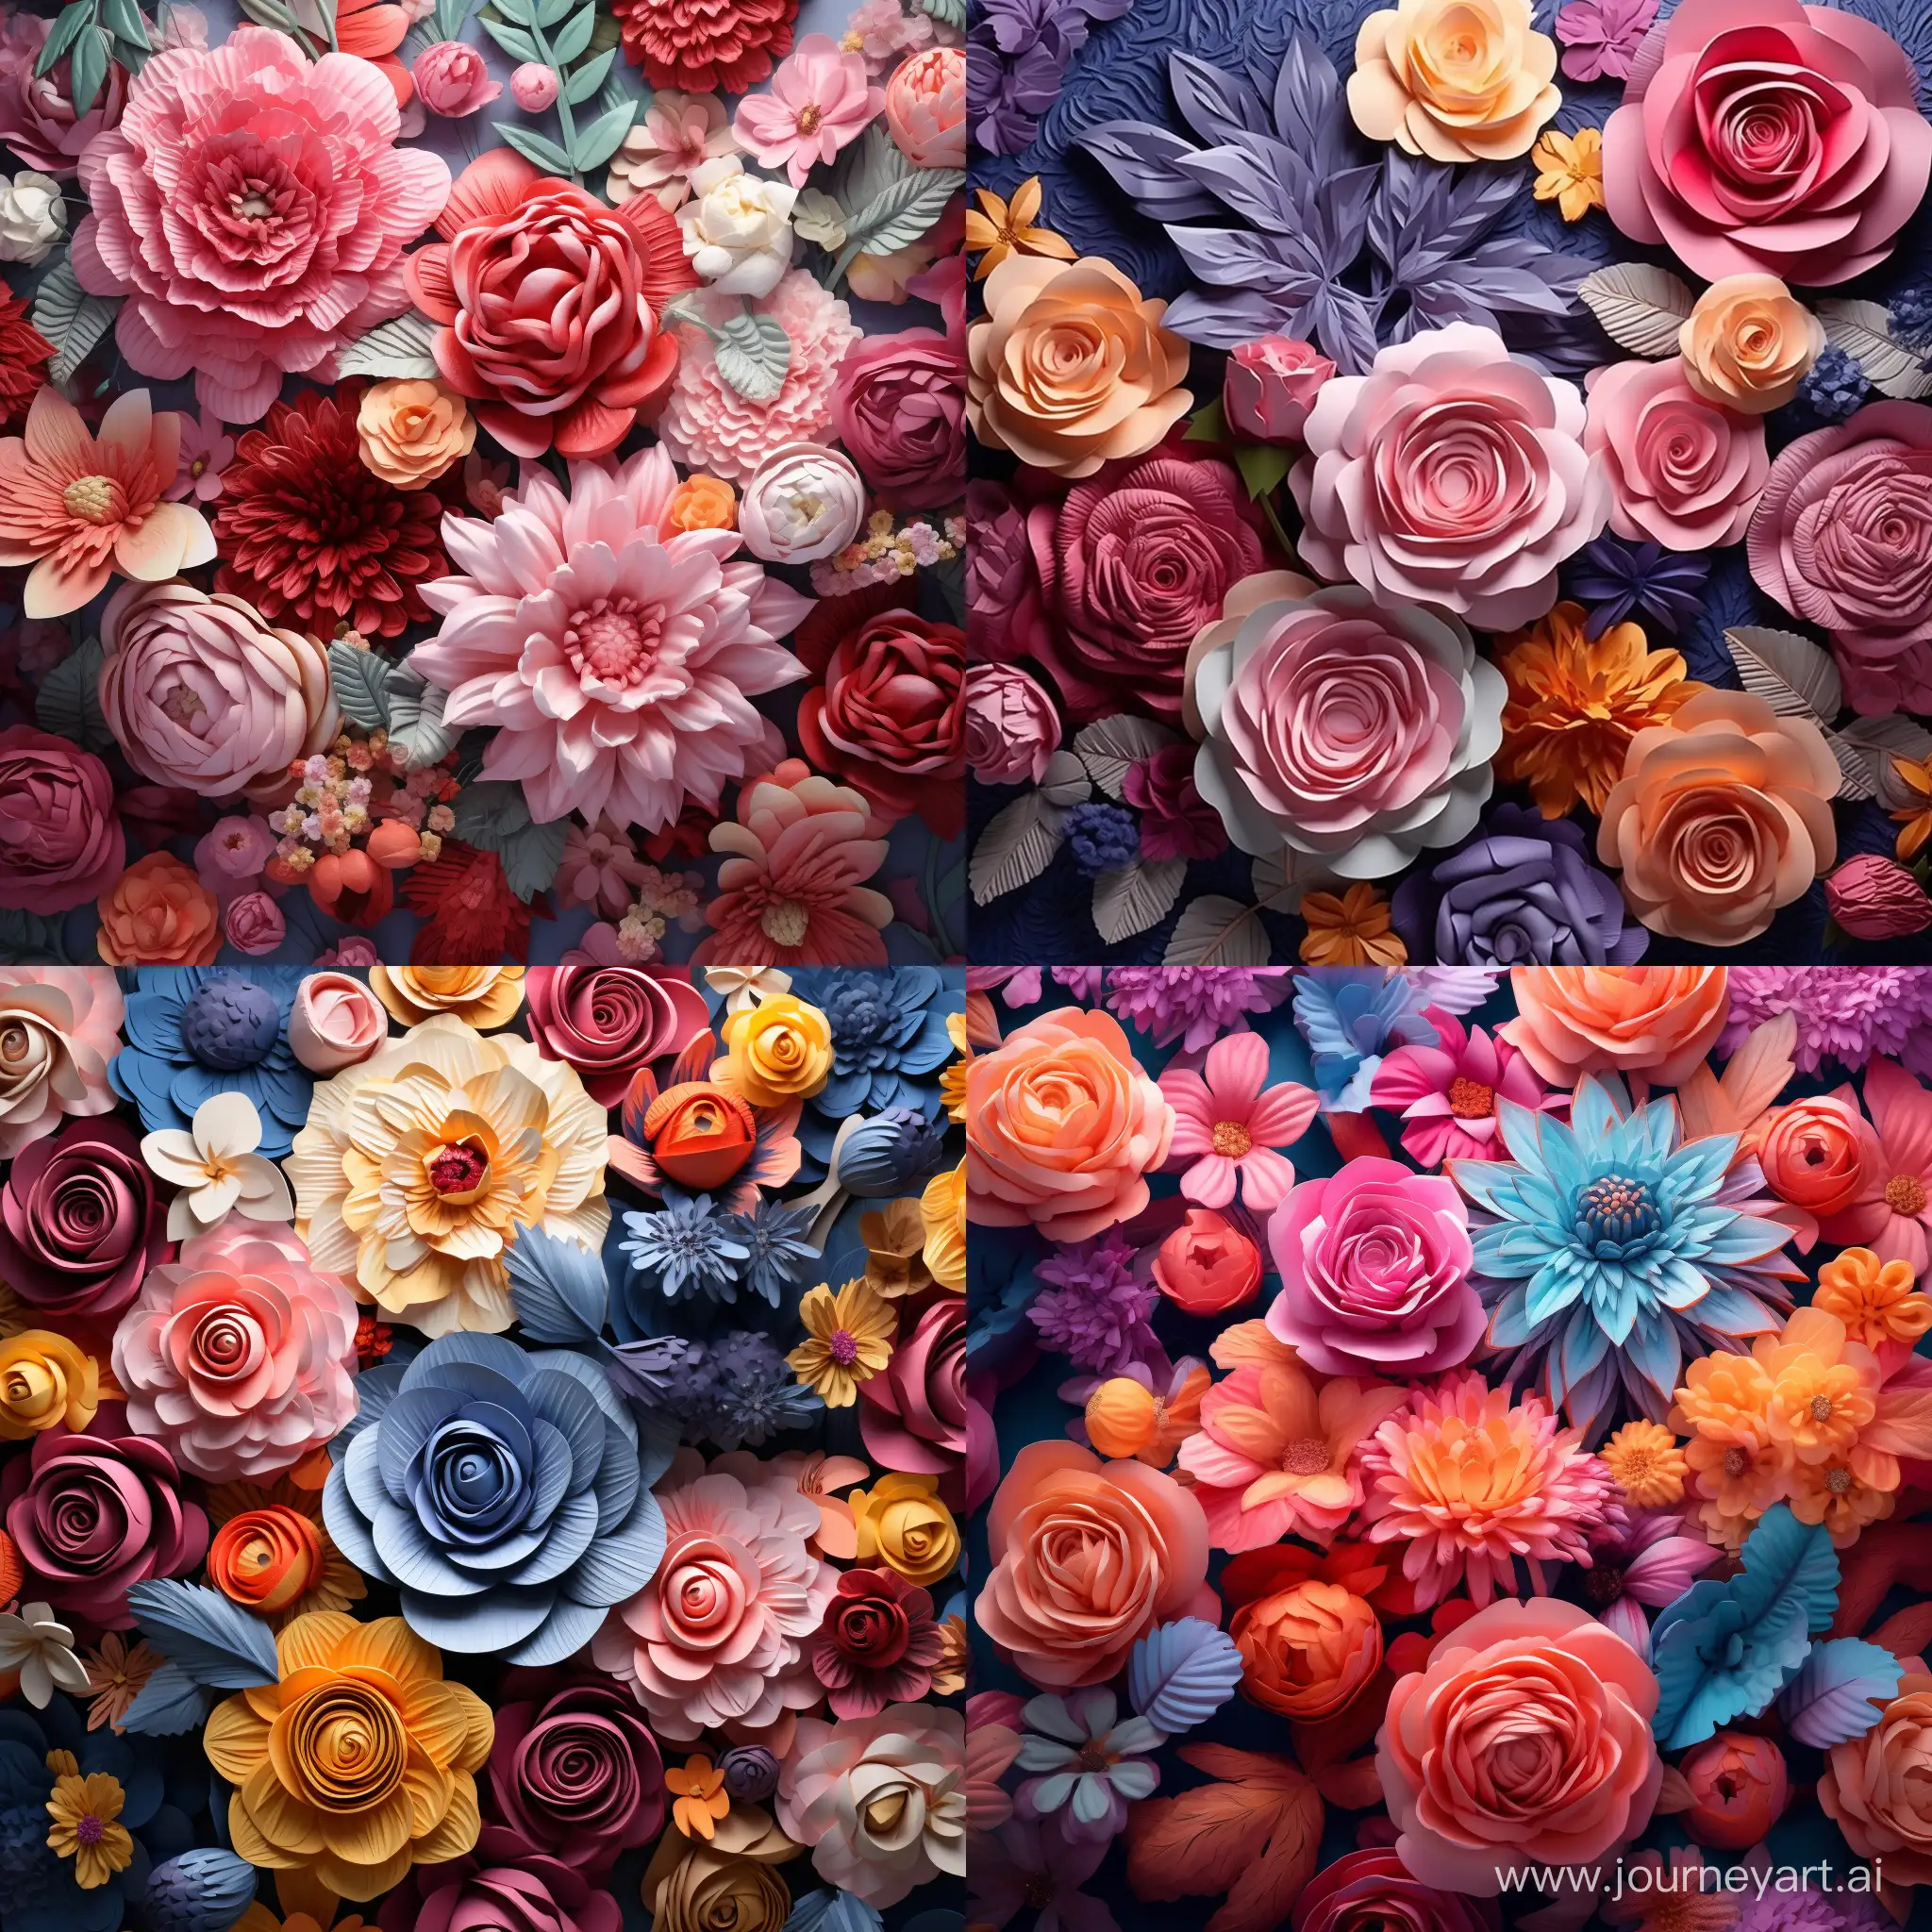 Vibrant-3D-Floral-Composition-with-AR-Enhancement